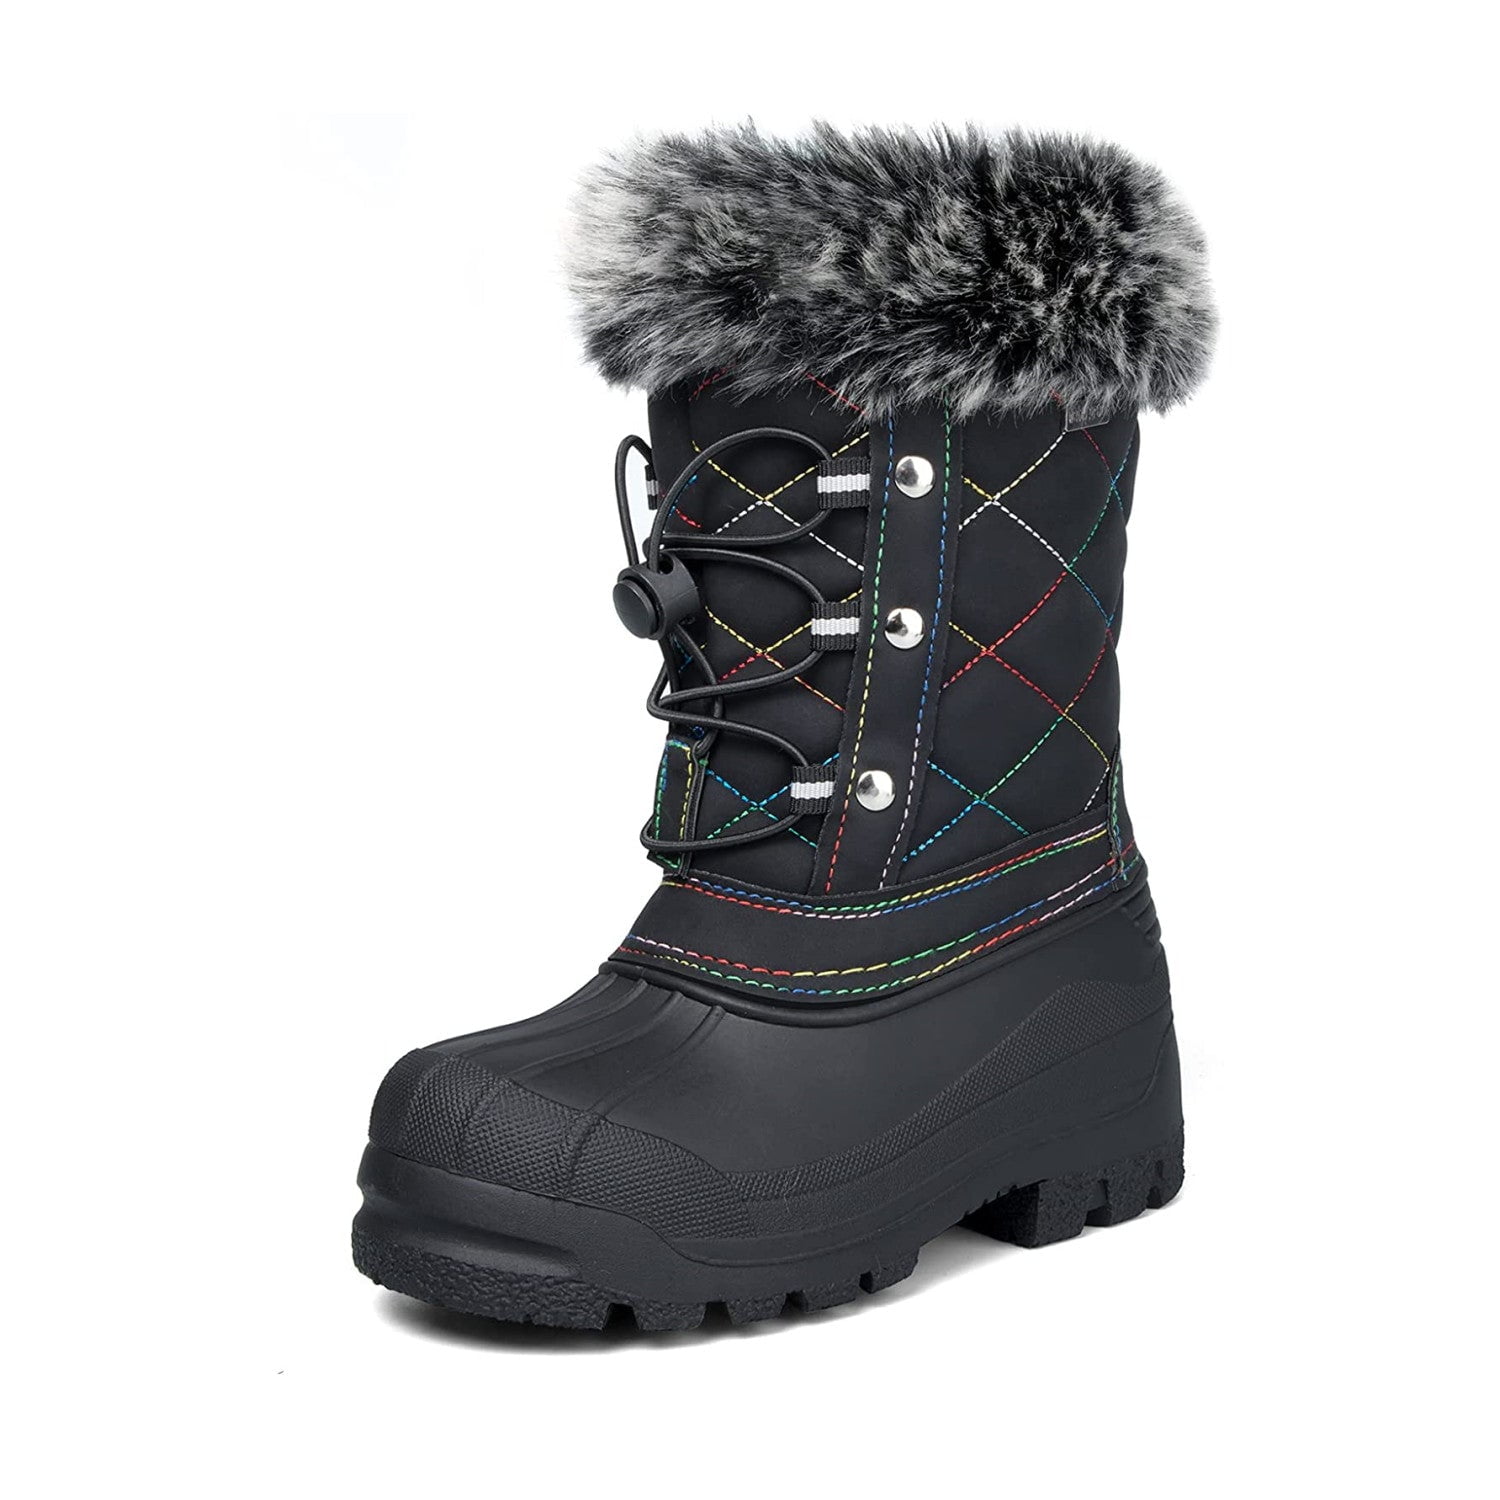 K KomForme Snow Boots Lined Waterproof Winter Boot Little Kid Size 10 ...